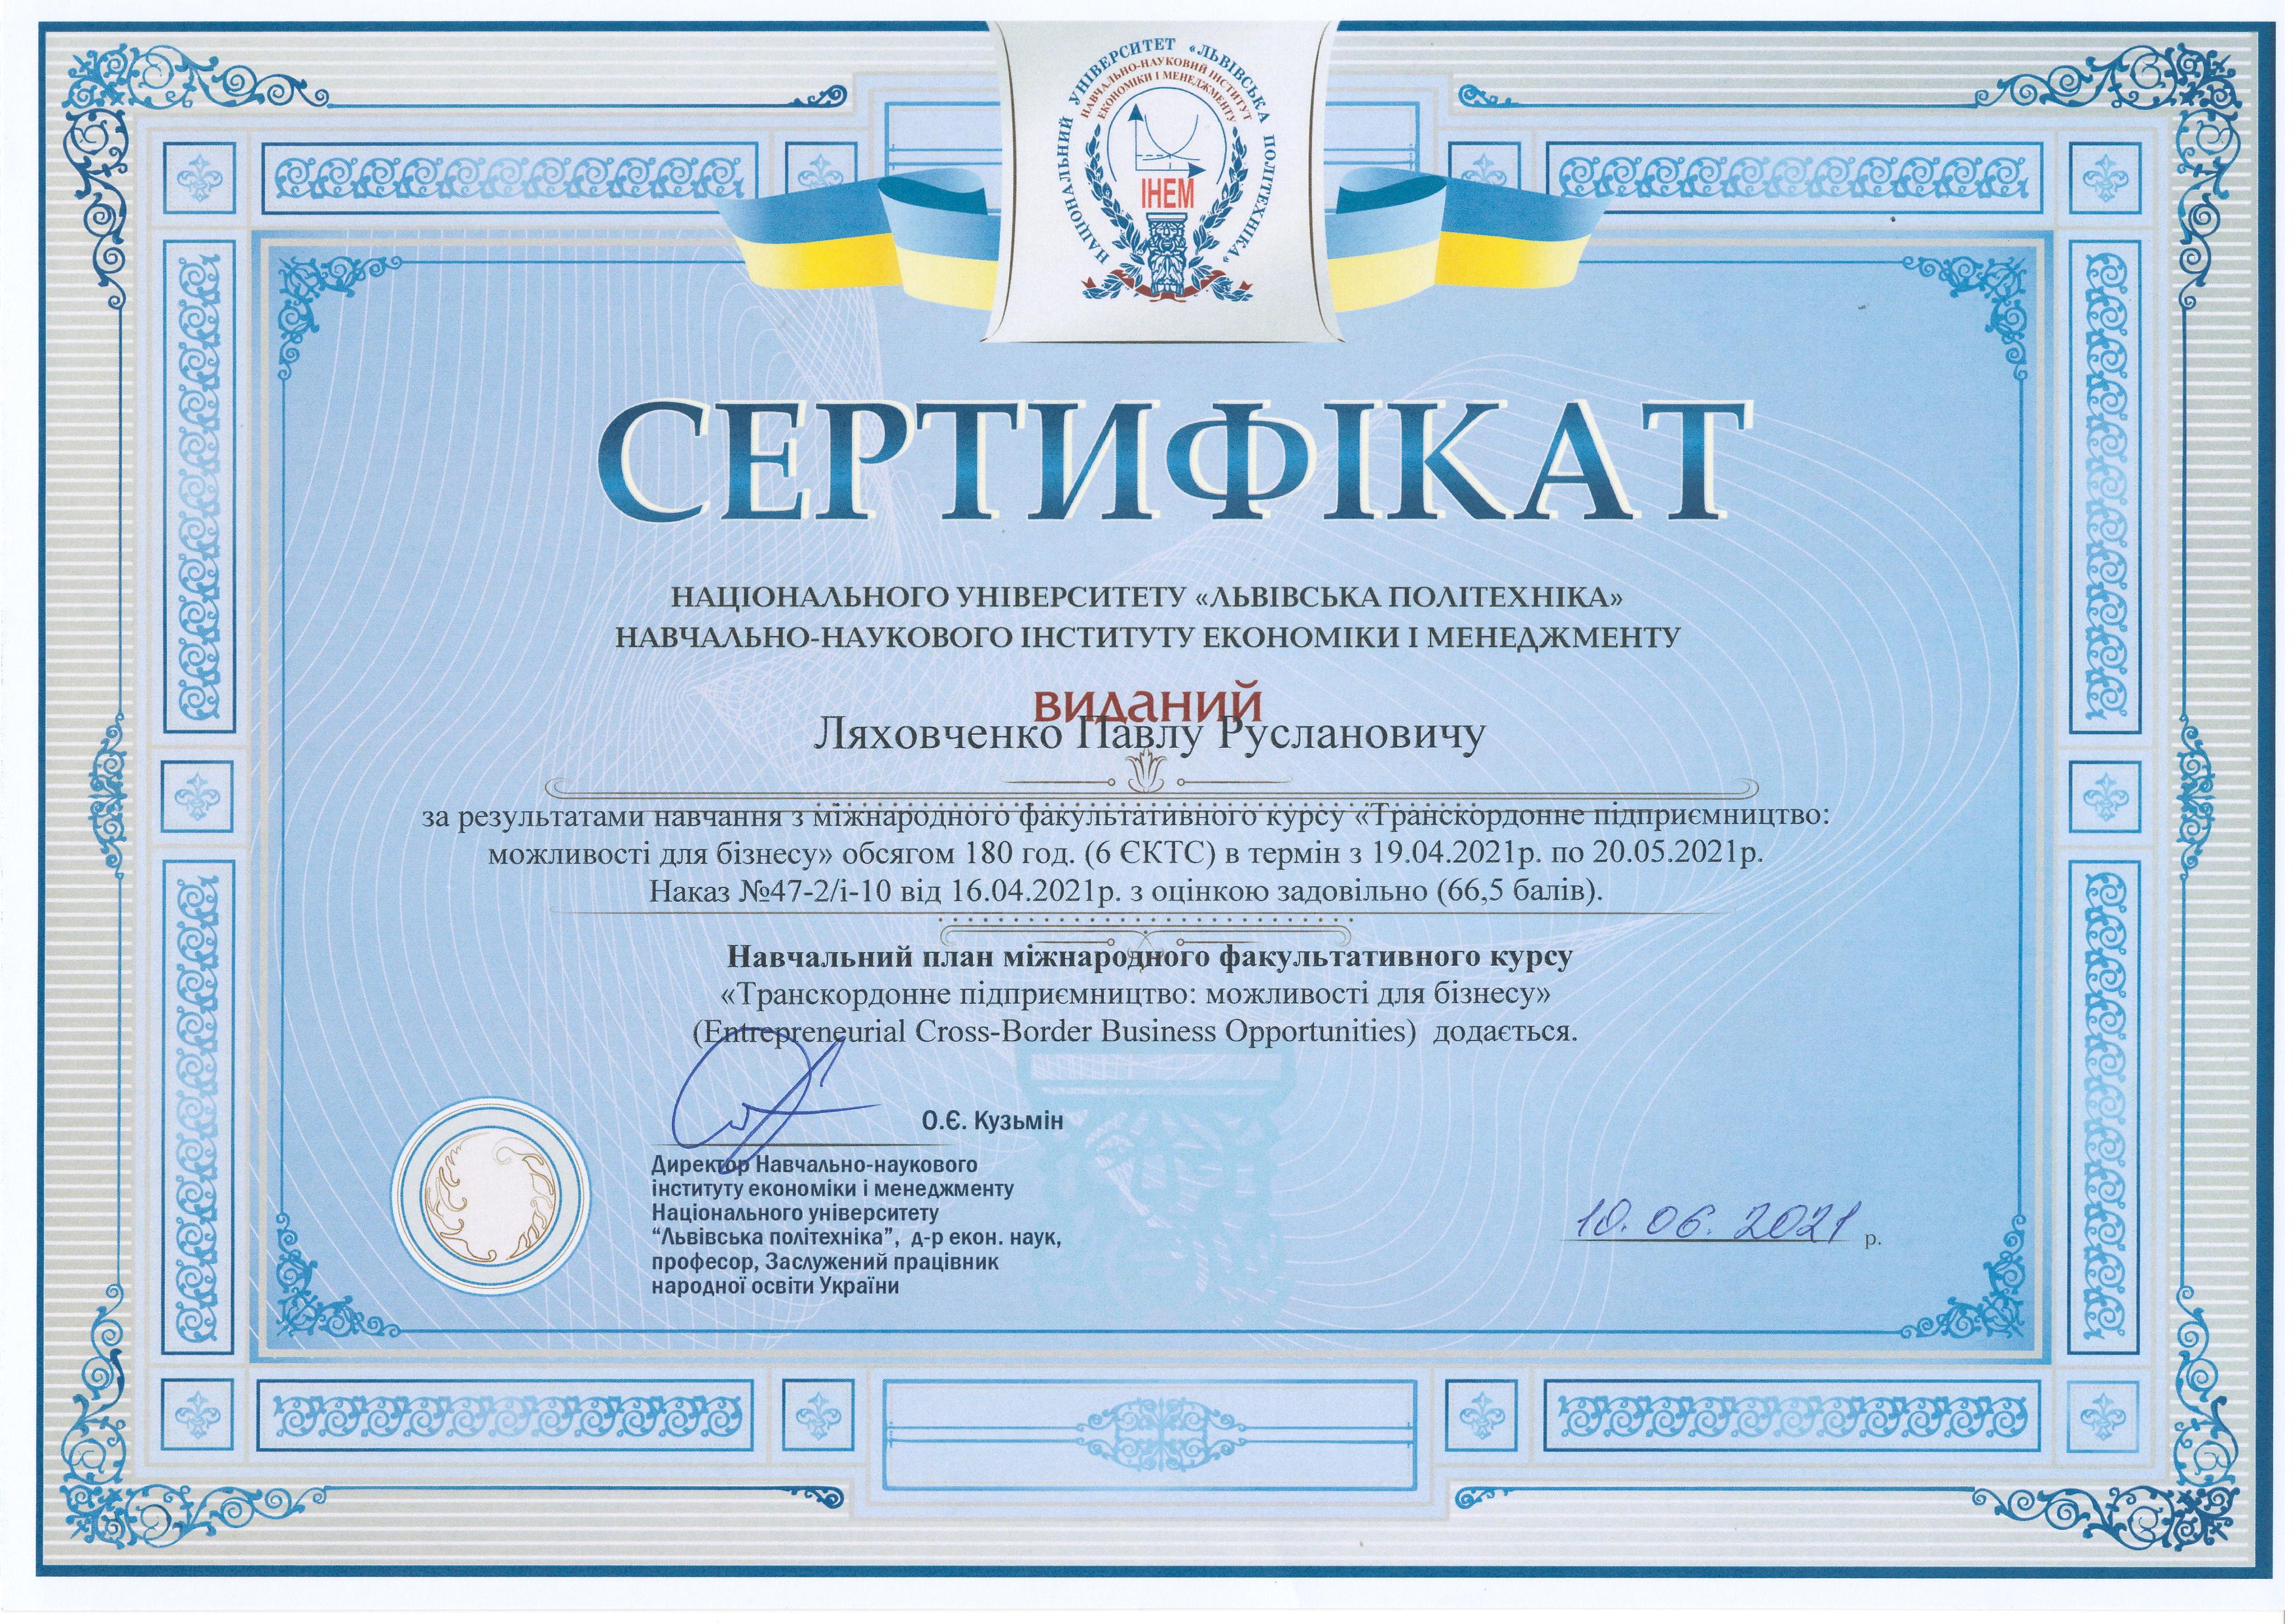 Сертифікат студента Павла Ляховченка